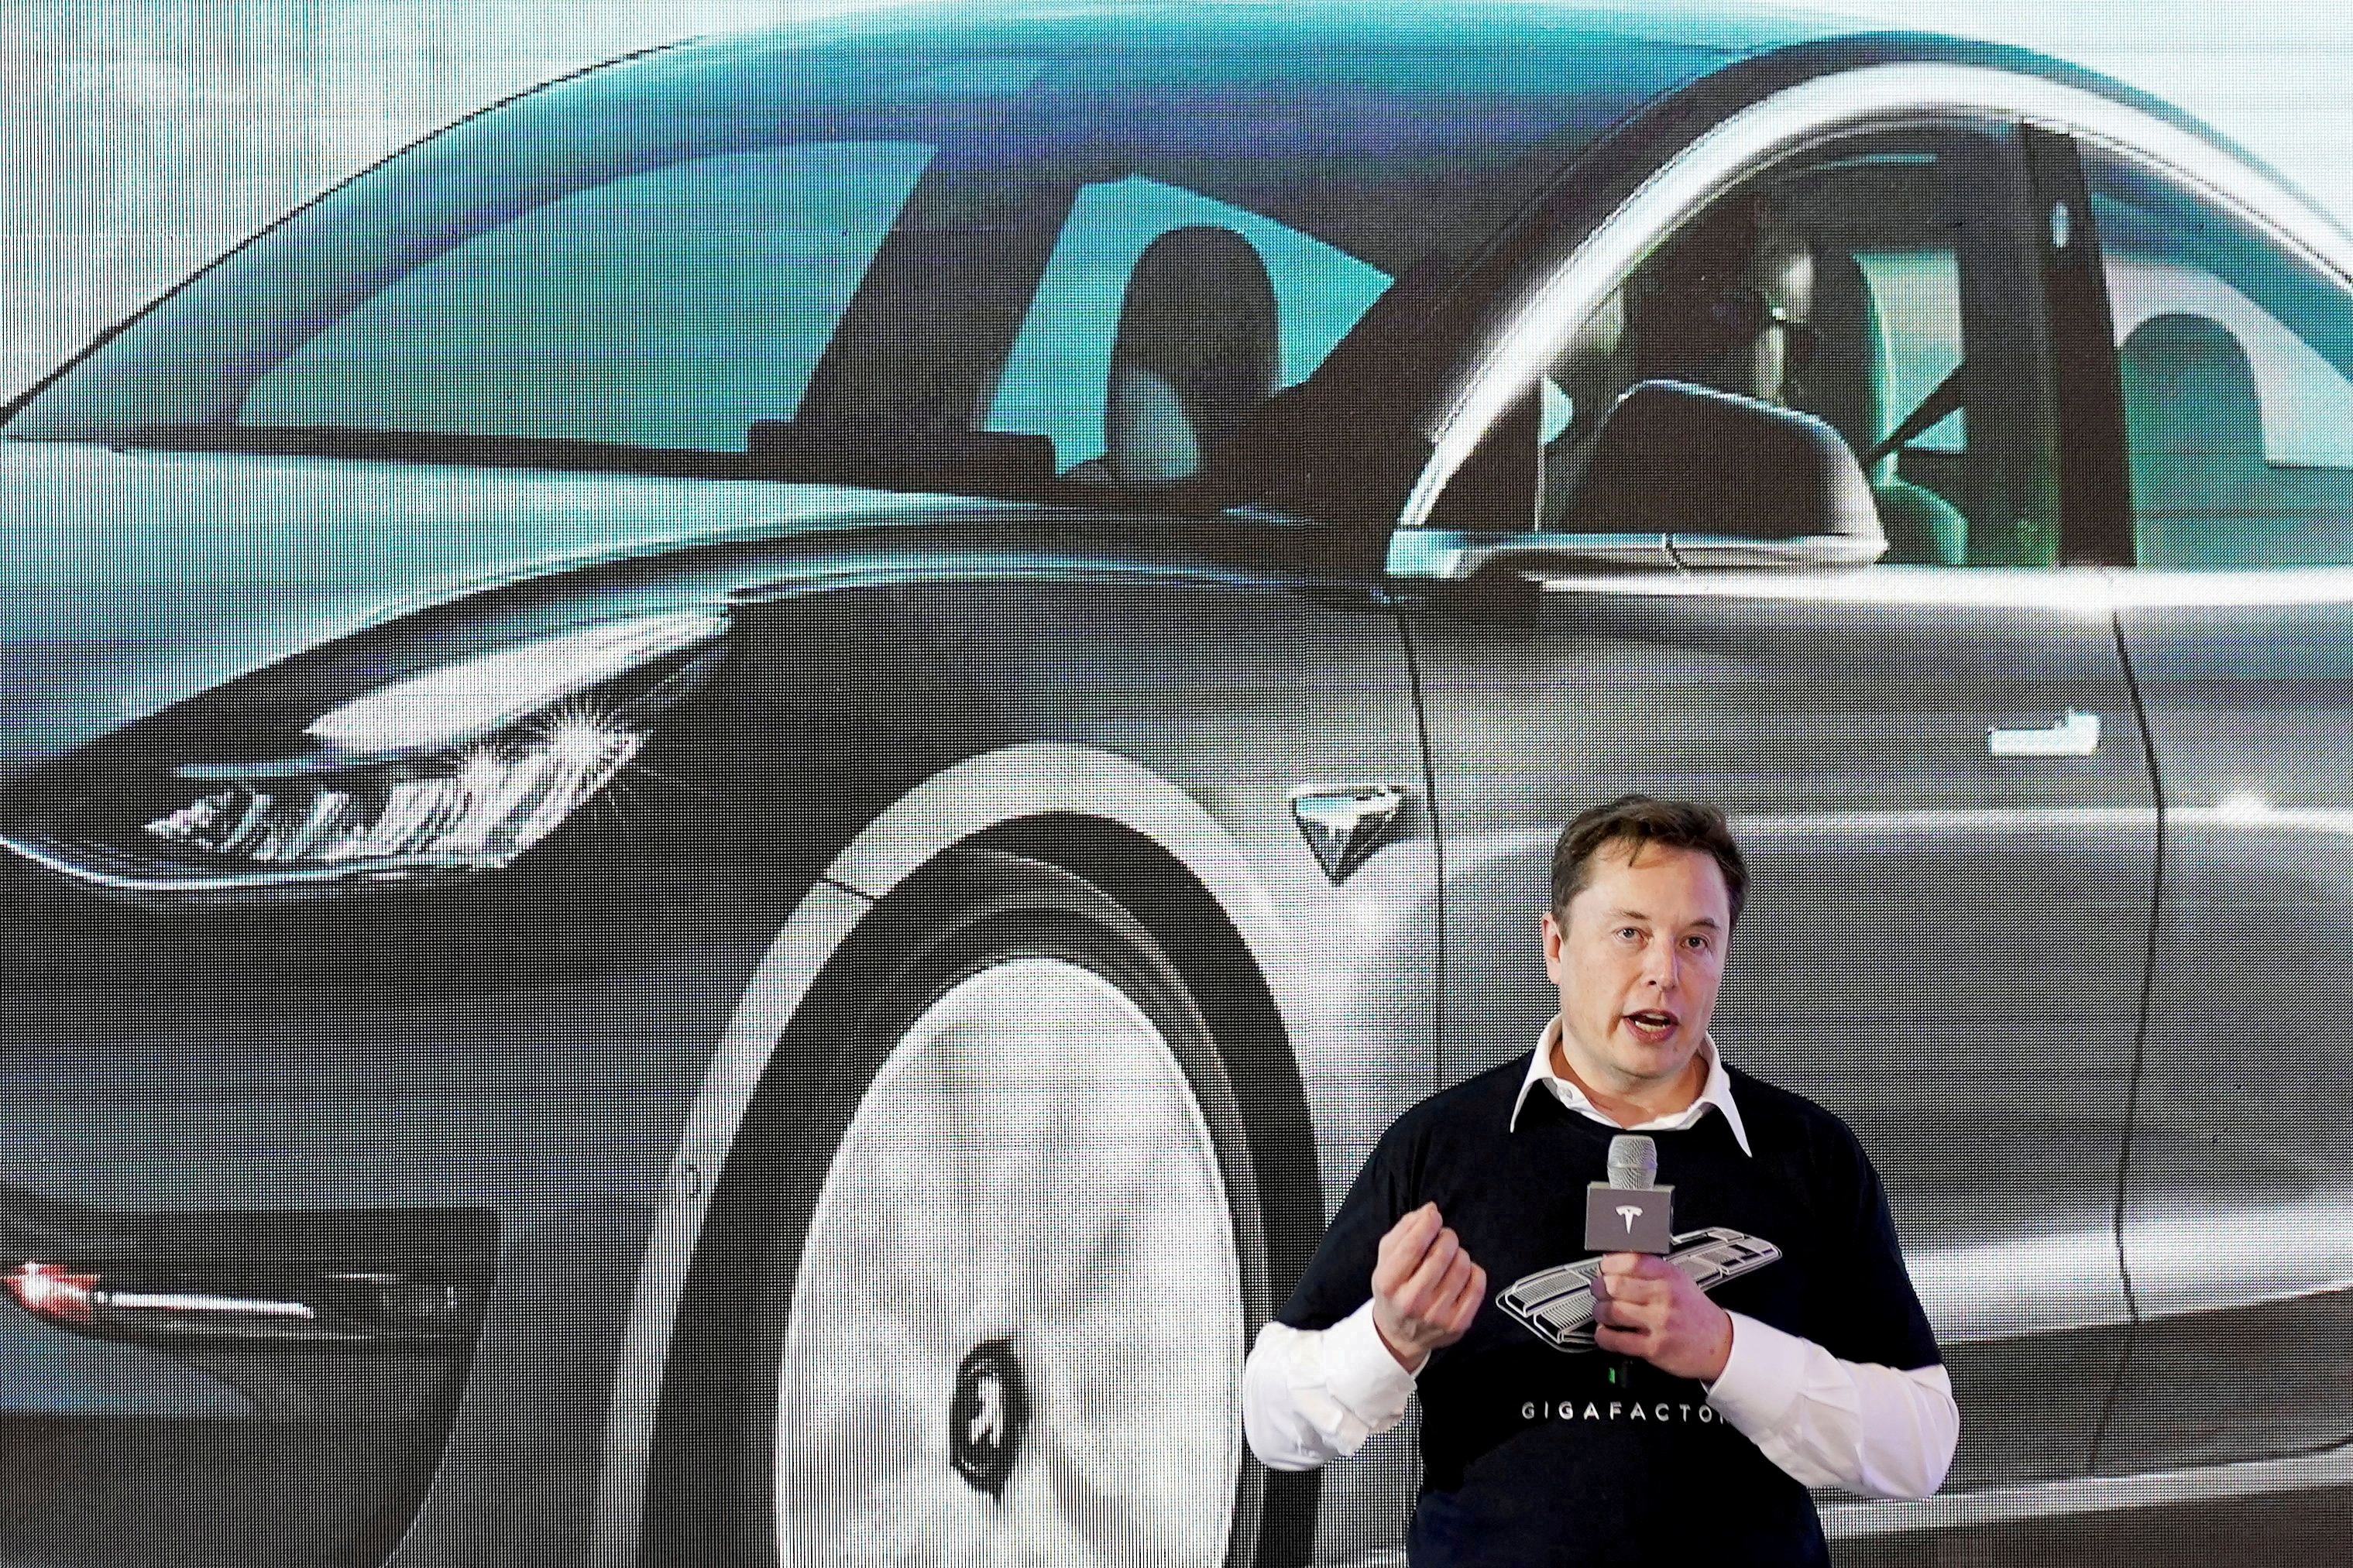 La società di Tesla, quella di Elon Musk, ha dichiarato che collaborerà con le autorità cinesi (REUTERS/Aly Song)